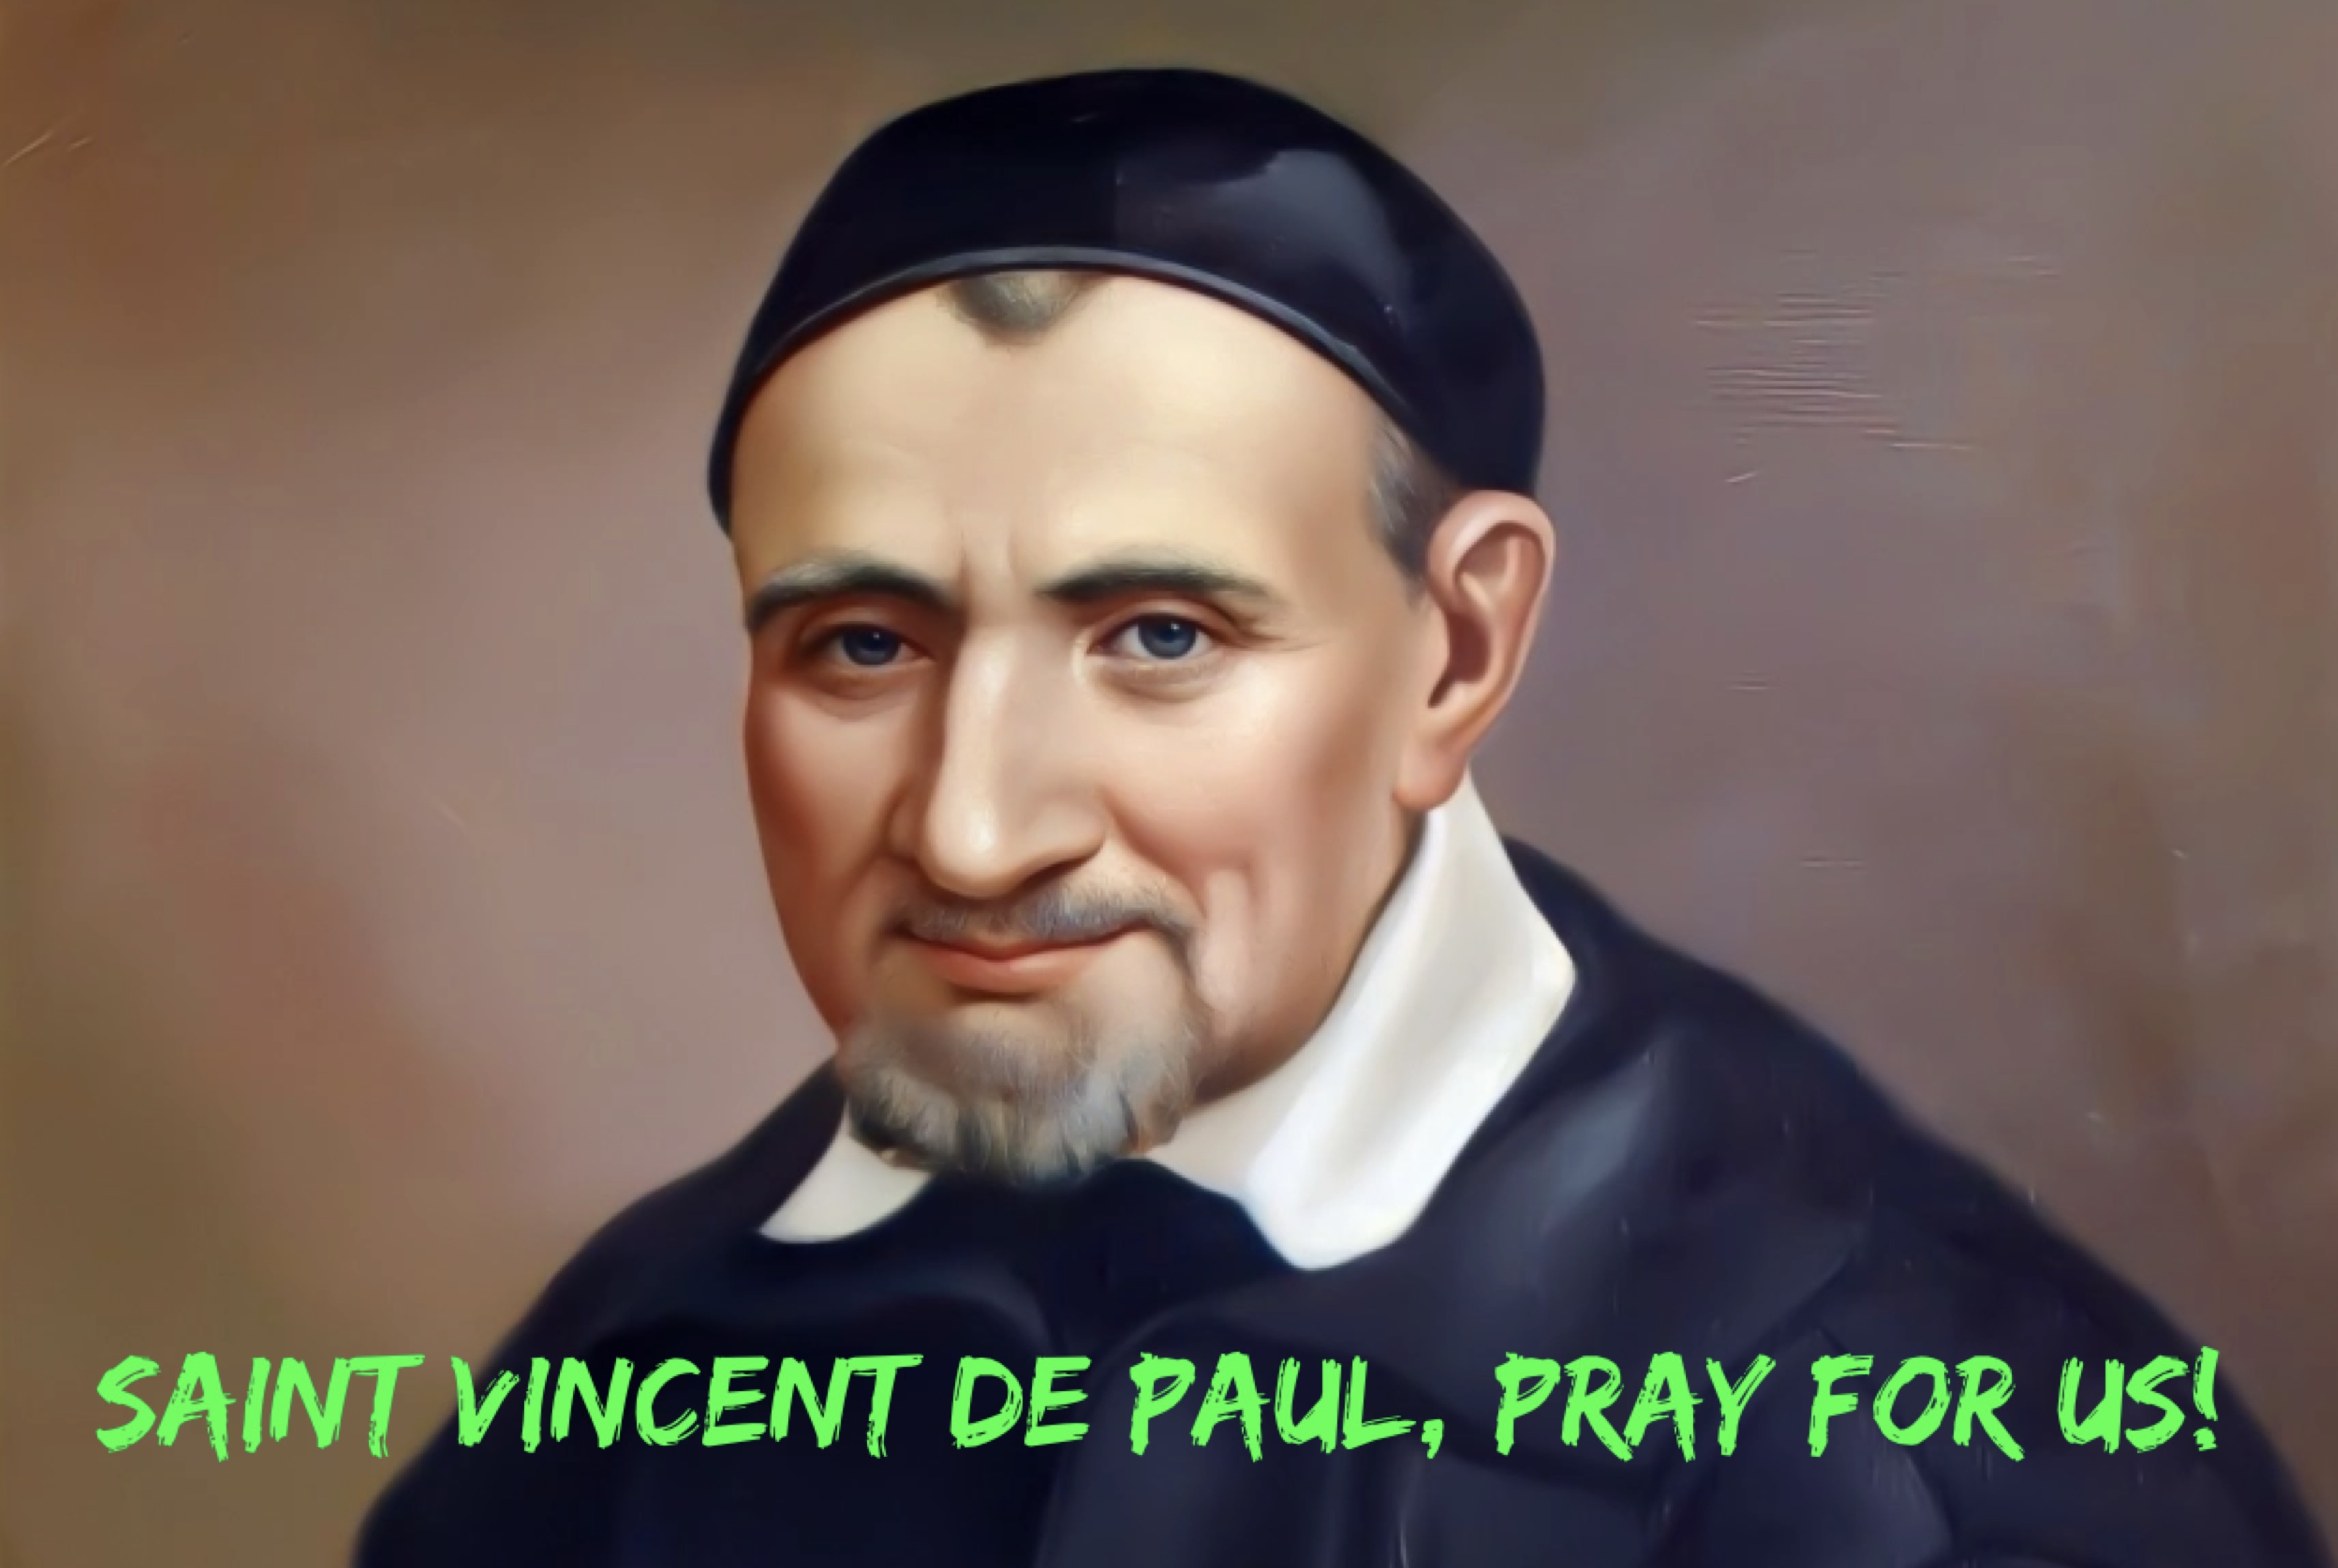 27th September - Saint Vincent de Paul